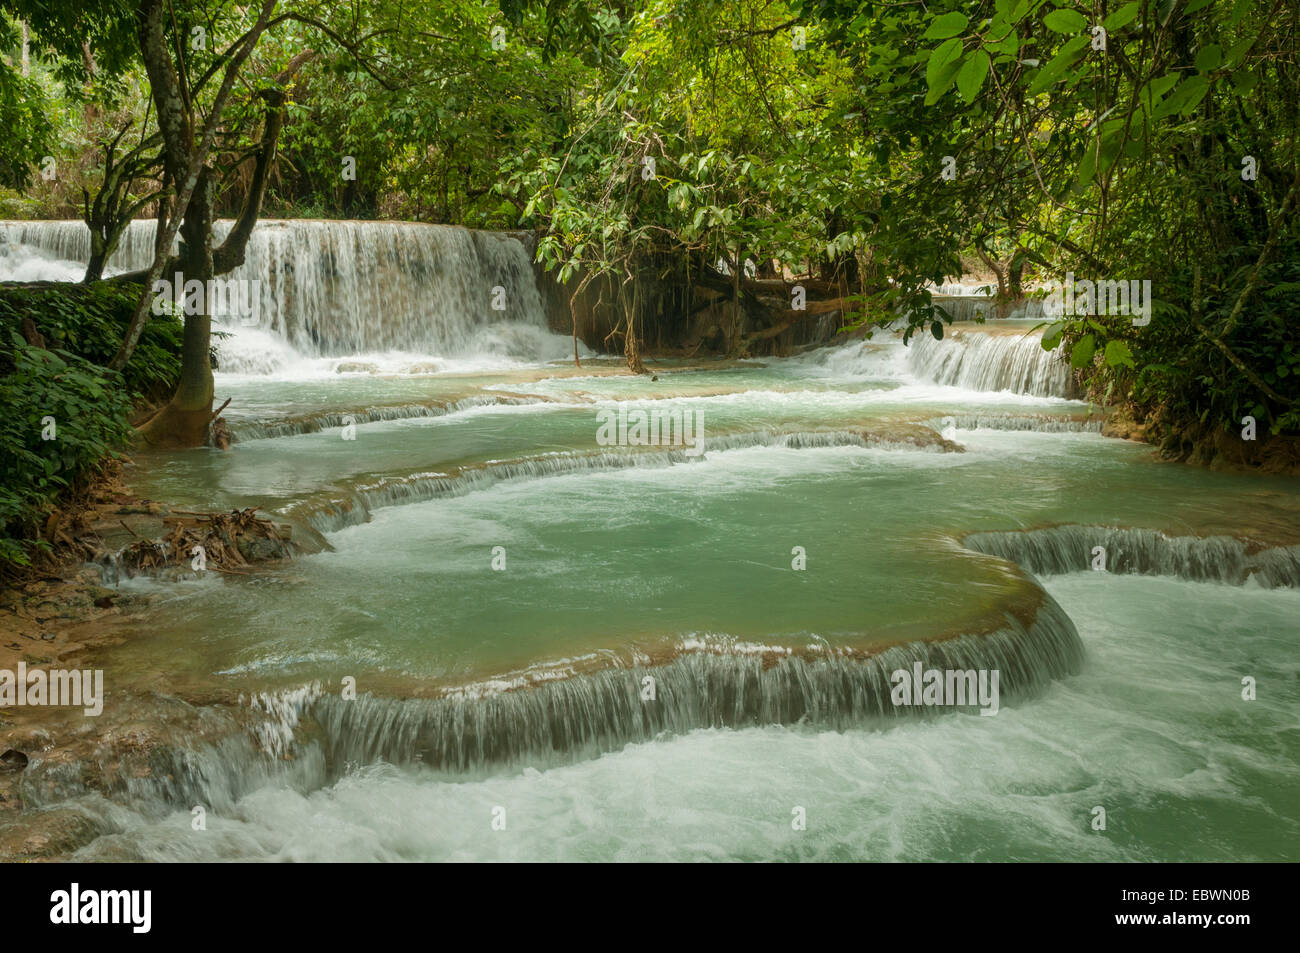 Waterfalls at Kuang Si, Laos Stock Photo